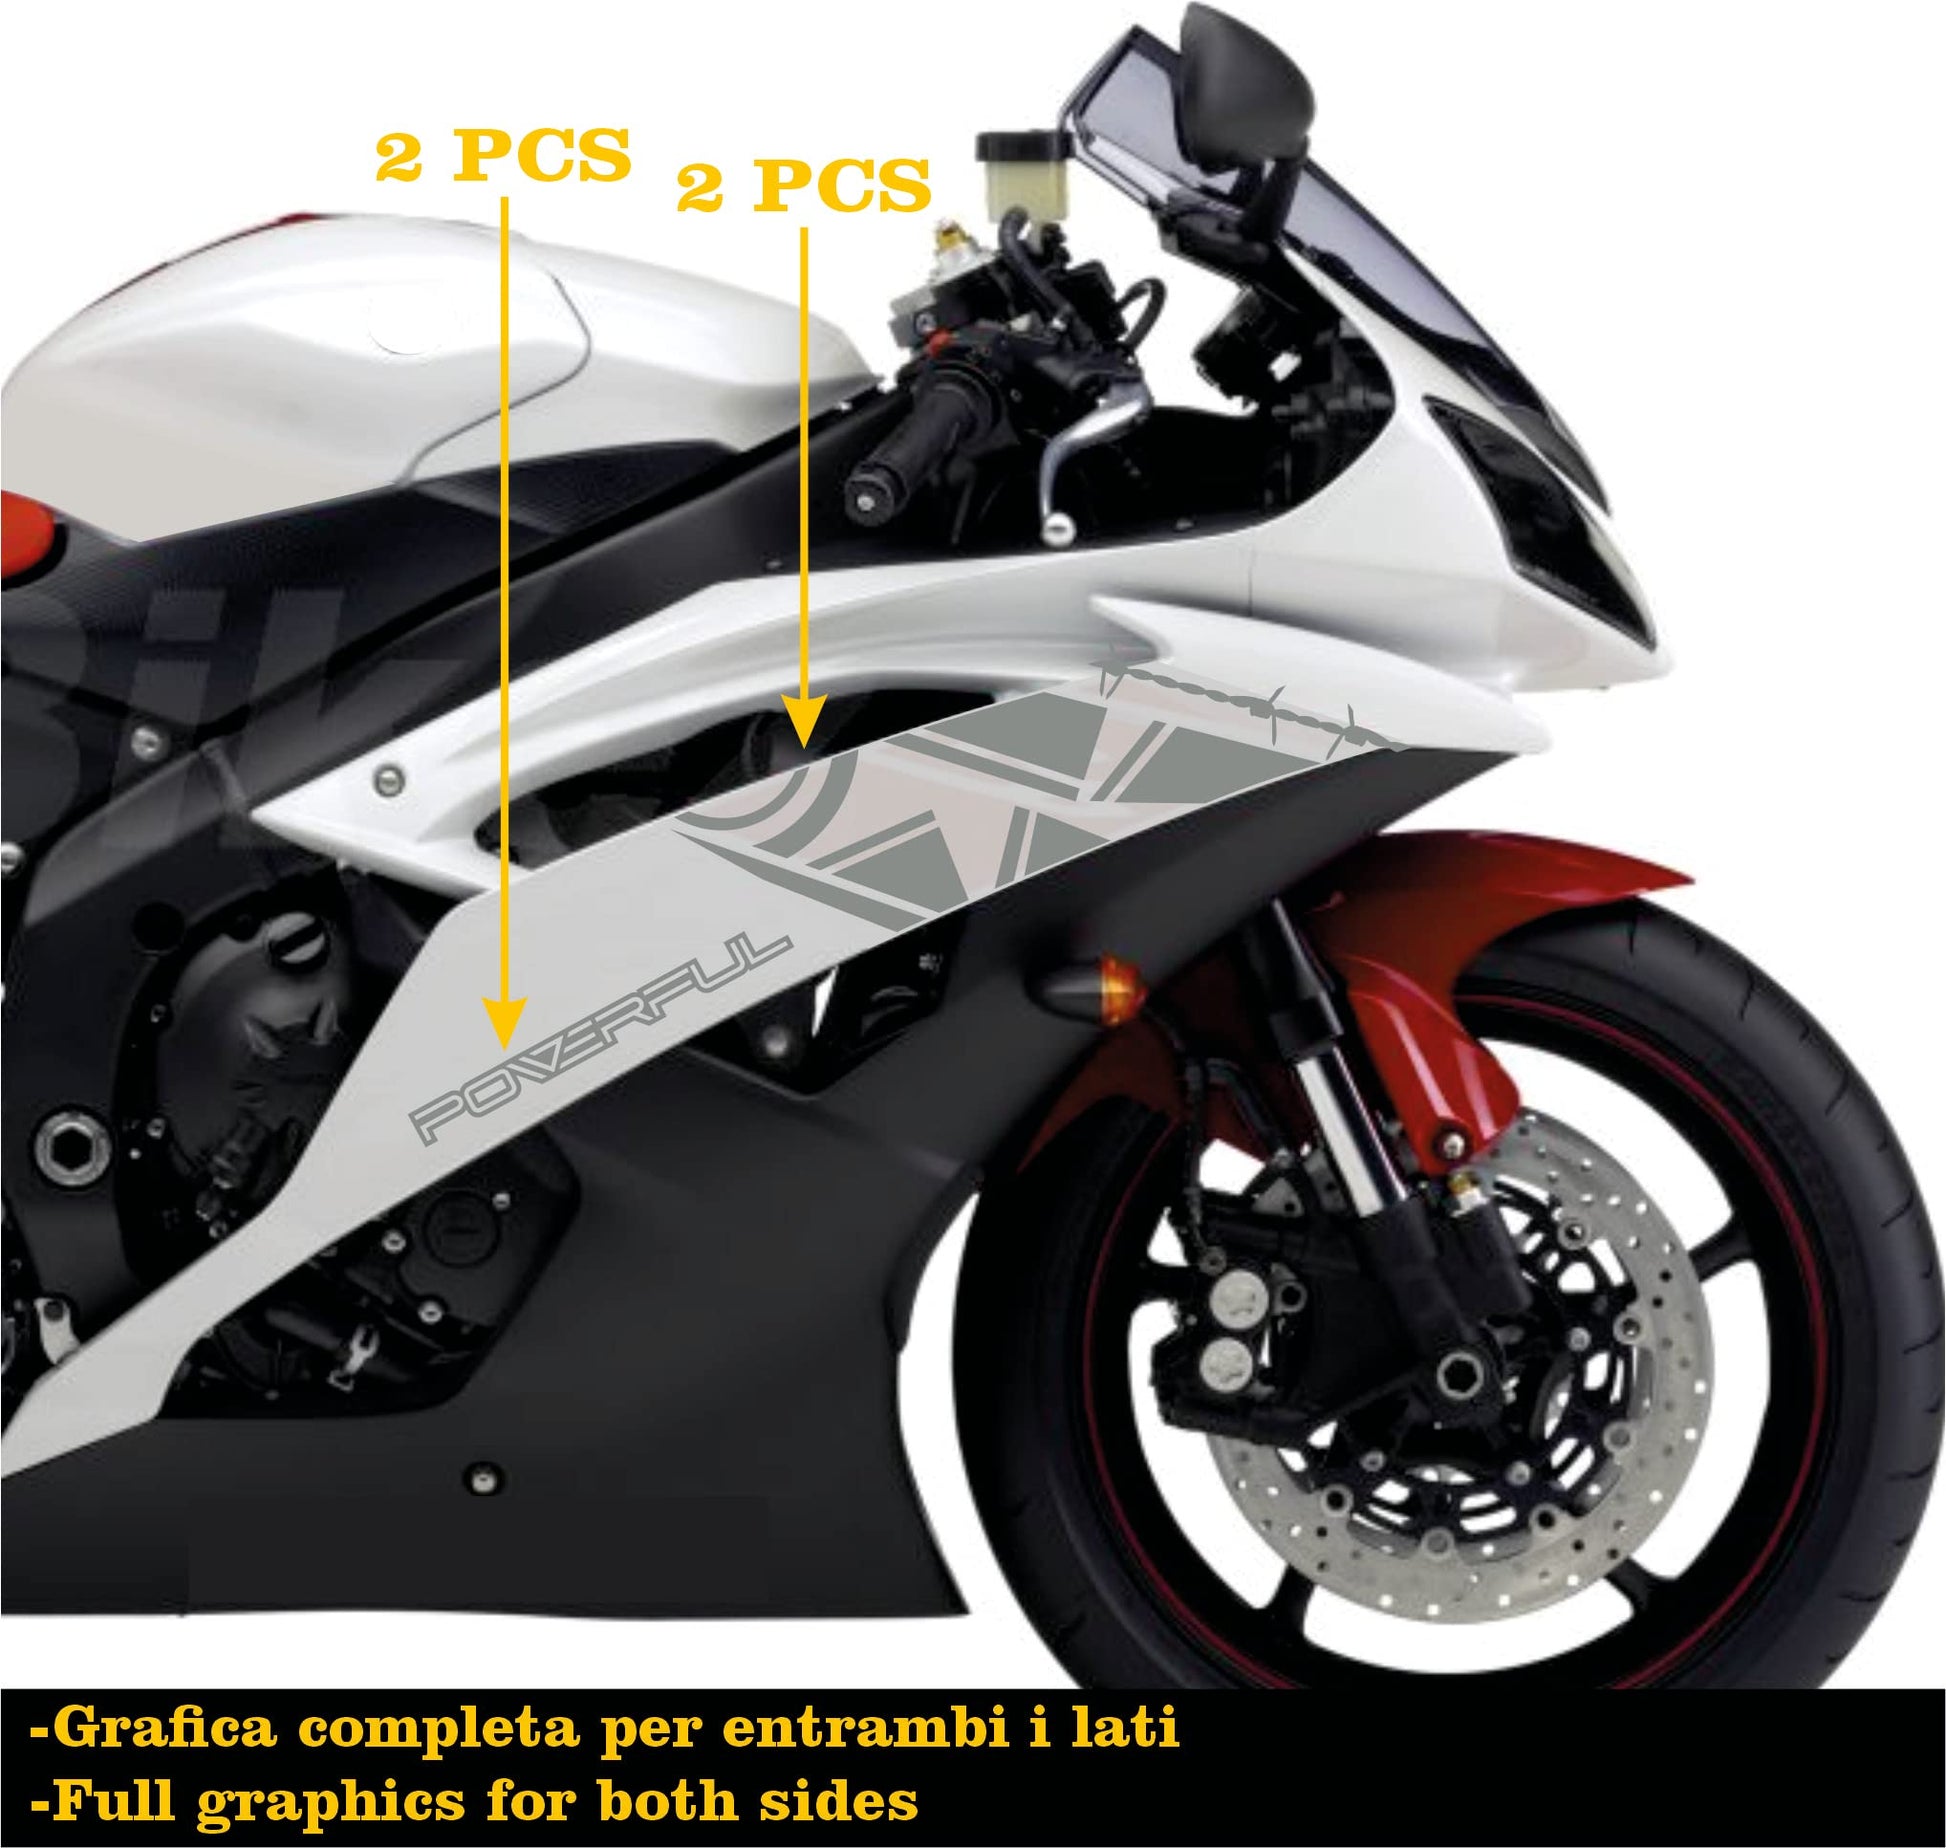 DualColorStampe Adesivi Compatibili con Yamaha R6 ANNO 2008 carena moto accessori stickers Motociclo colore a scelta POWERFUL COD.M0283 a €34.99 solo da DualColorStampe